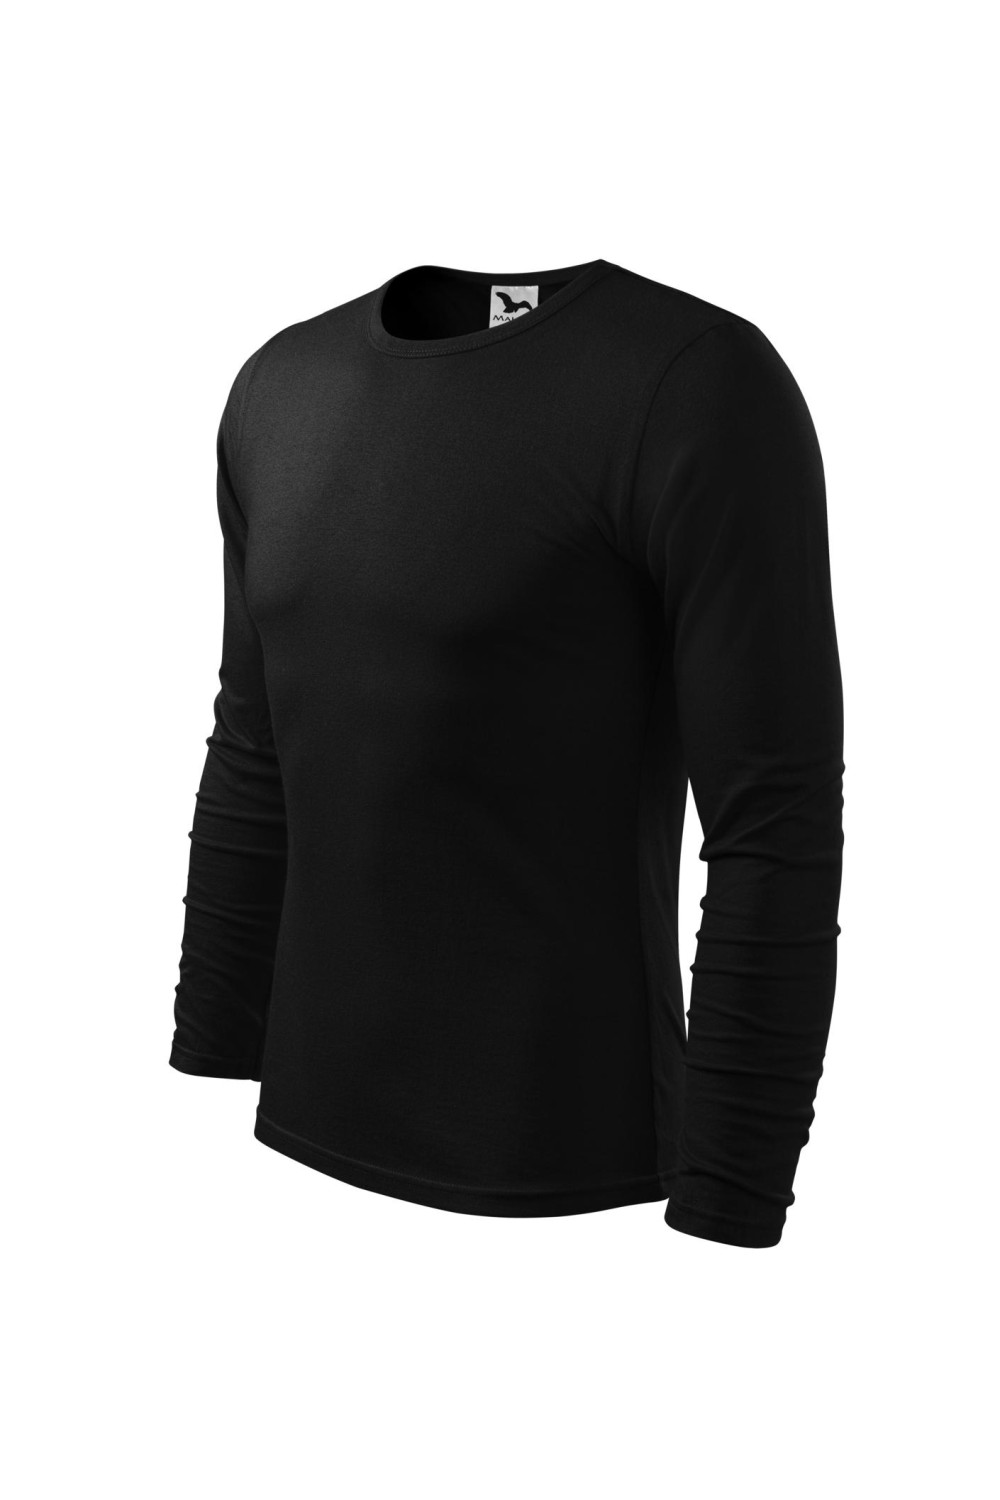 FIT-T LS 119 MALFINI ADLER Koszulka męska fitness z długim rękawem 100% bawełna czarny